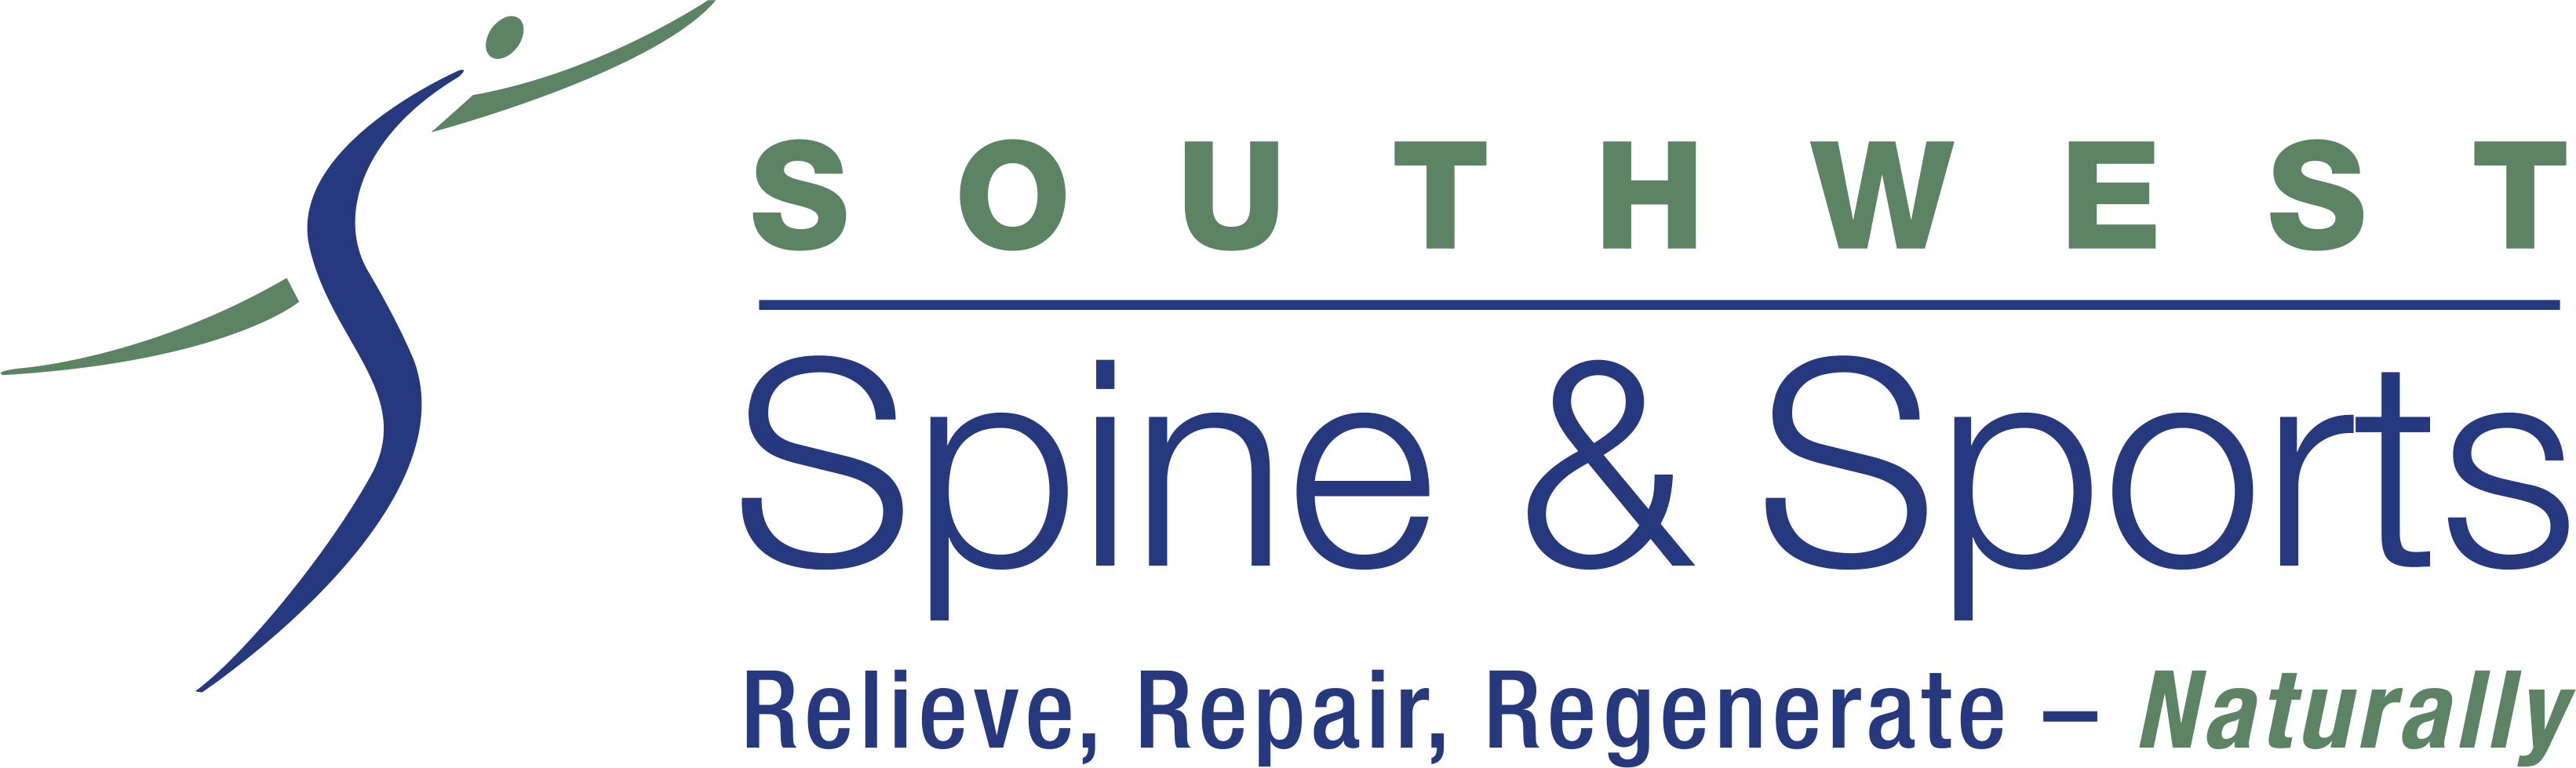 Scottsdale, AZ Orthopedic Physician Logo